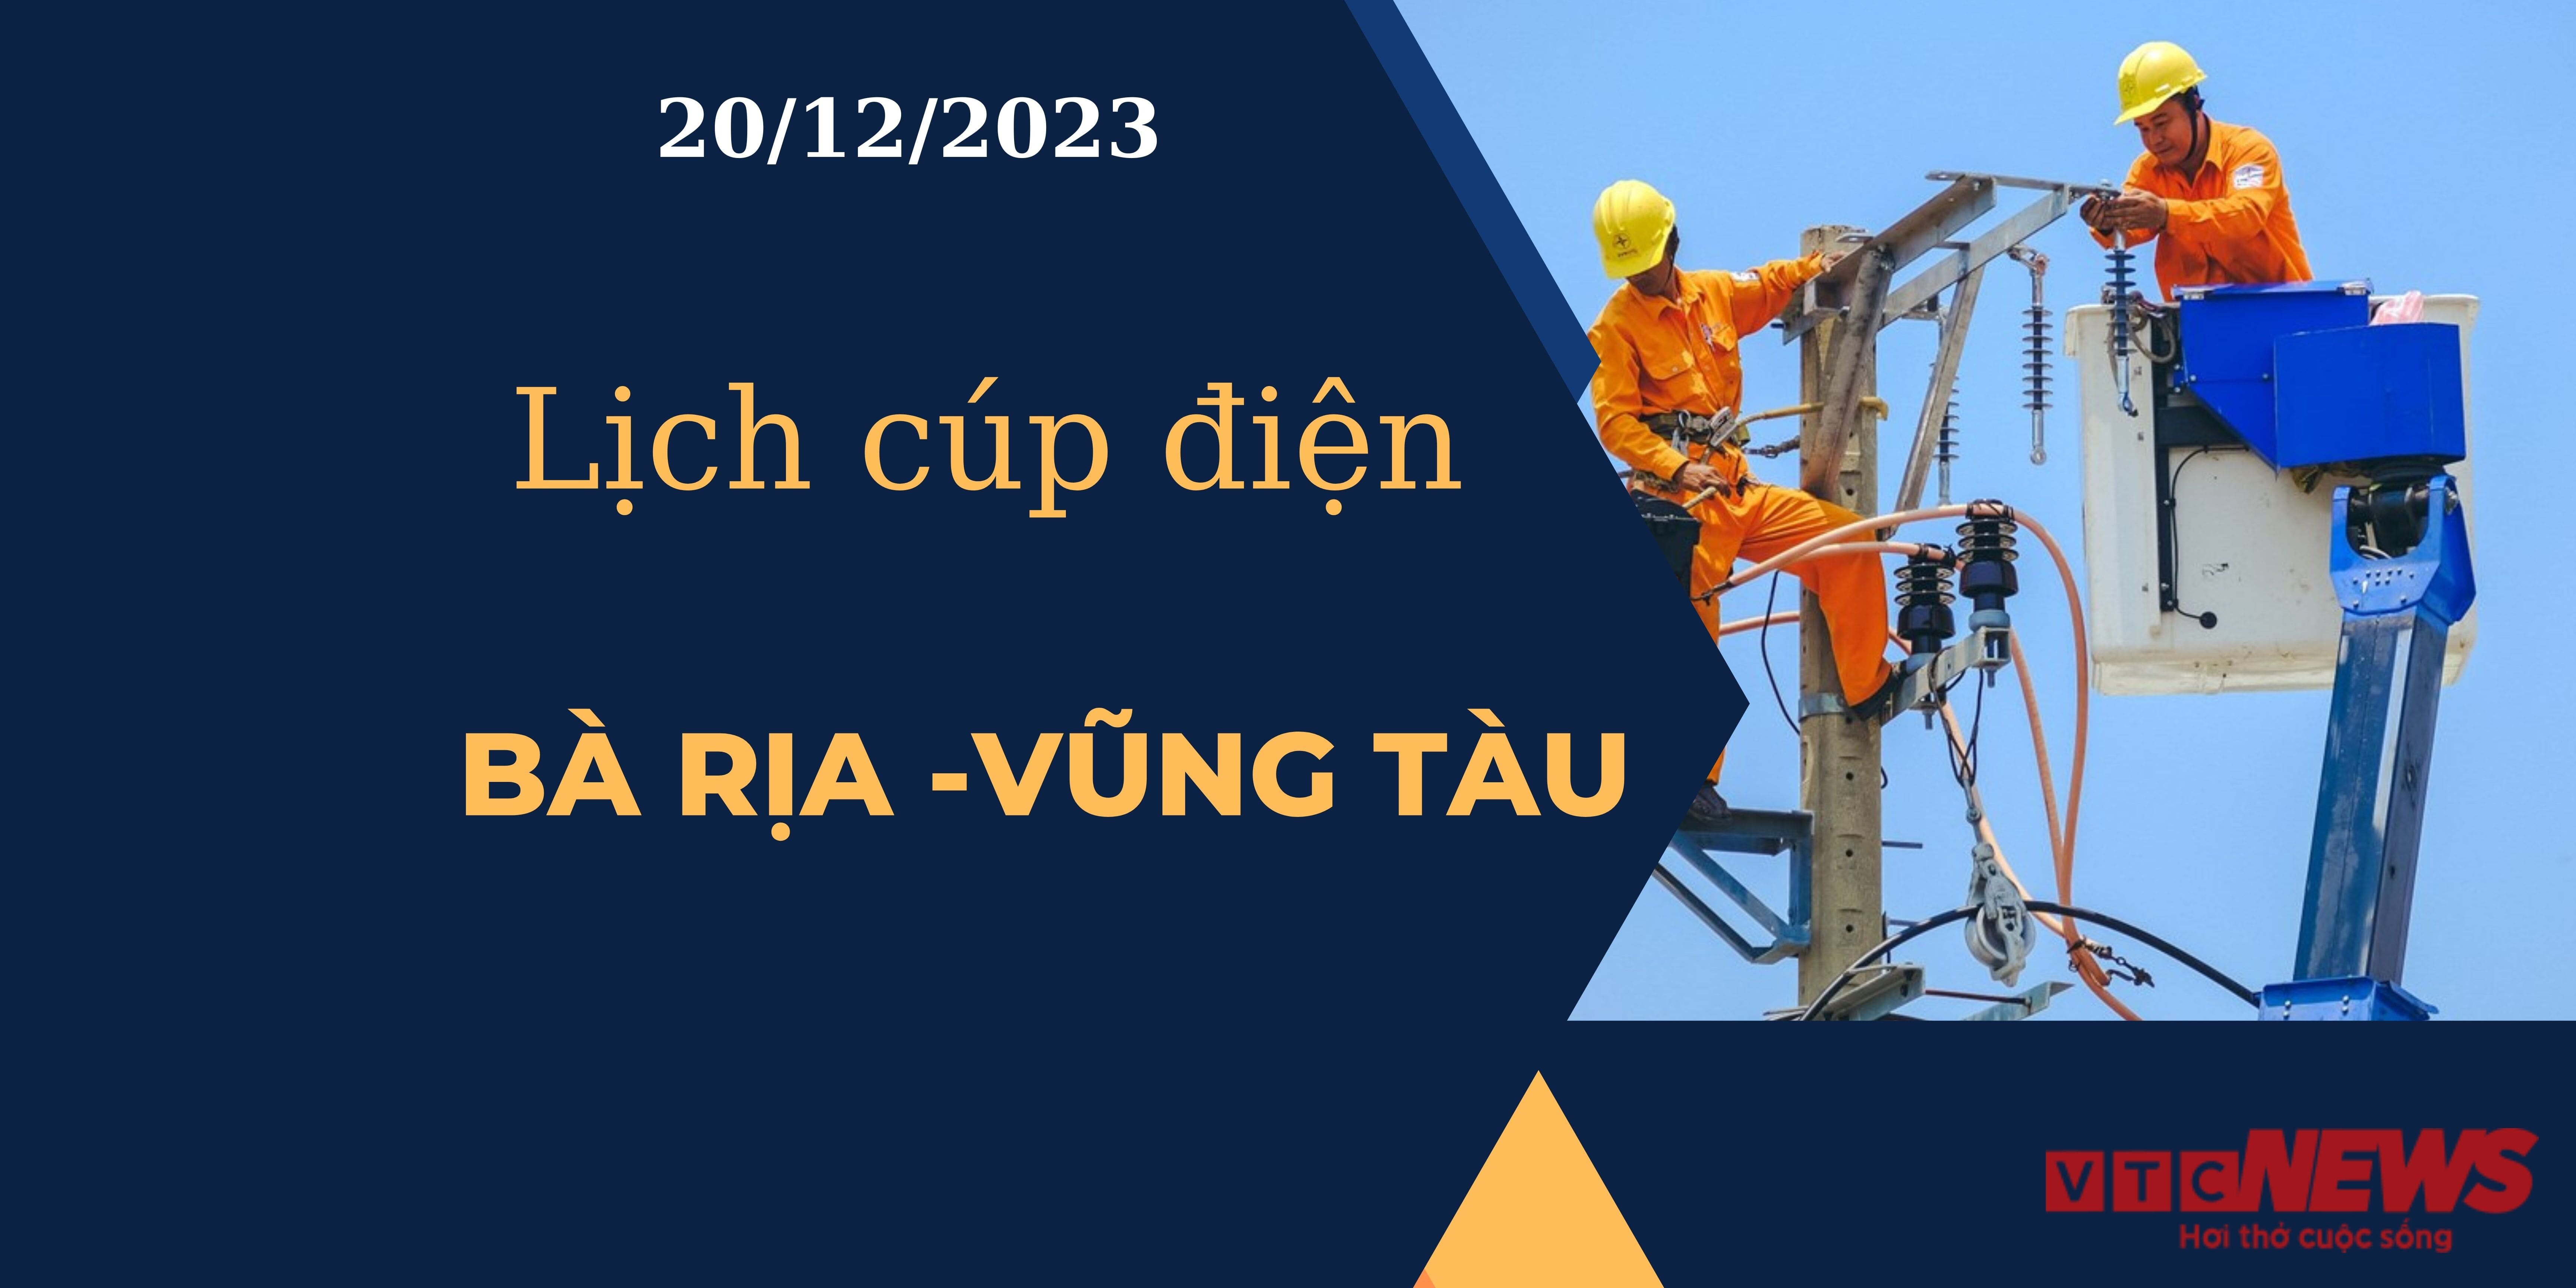 Lịch cúp điện Bà Rịa - Vũng Tàu ngày 20/12/2023